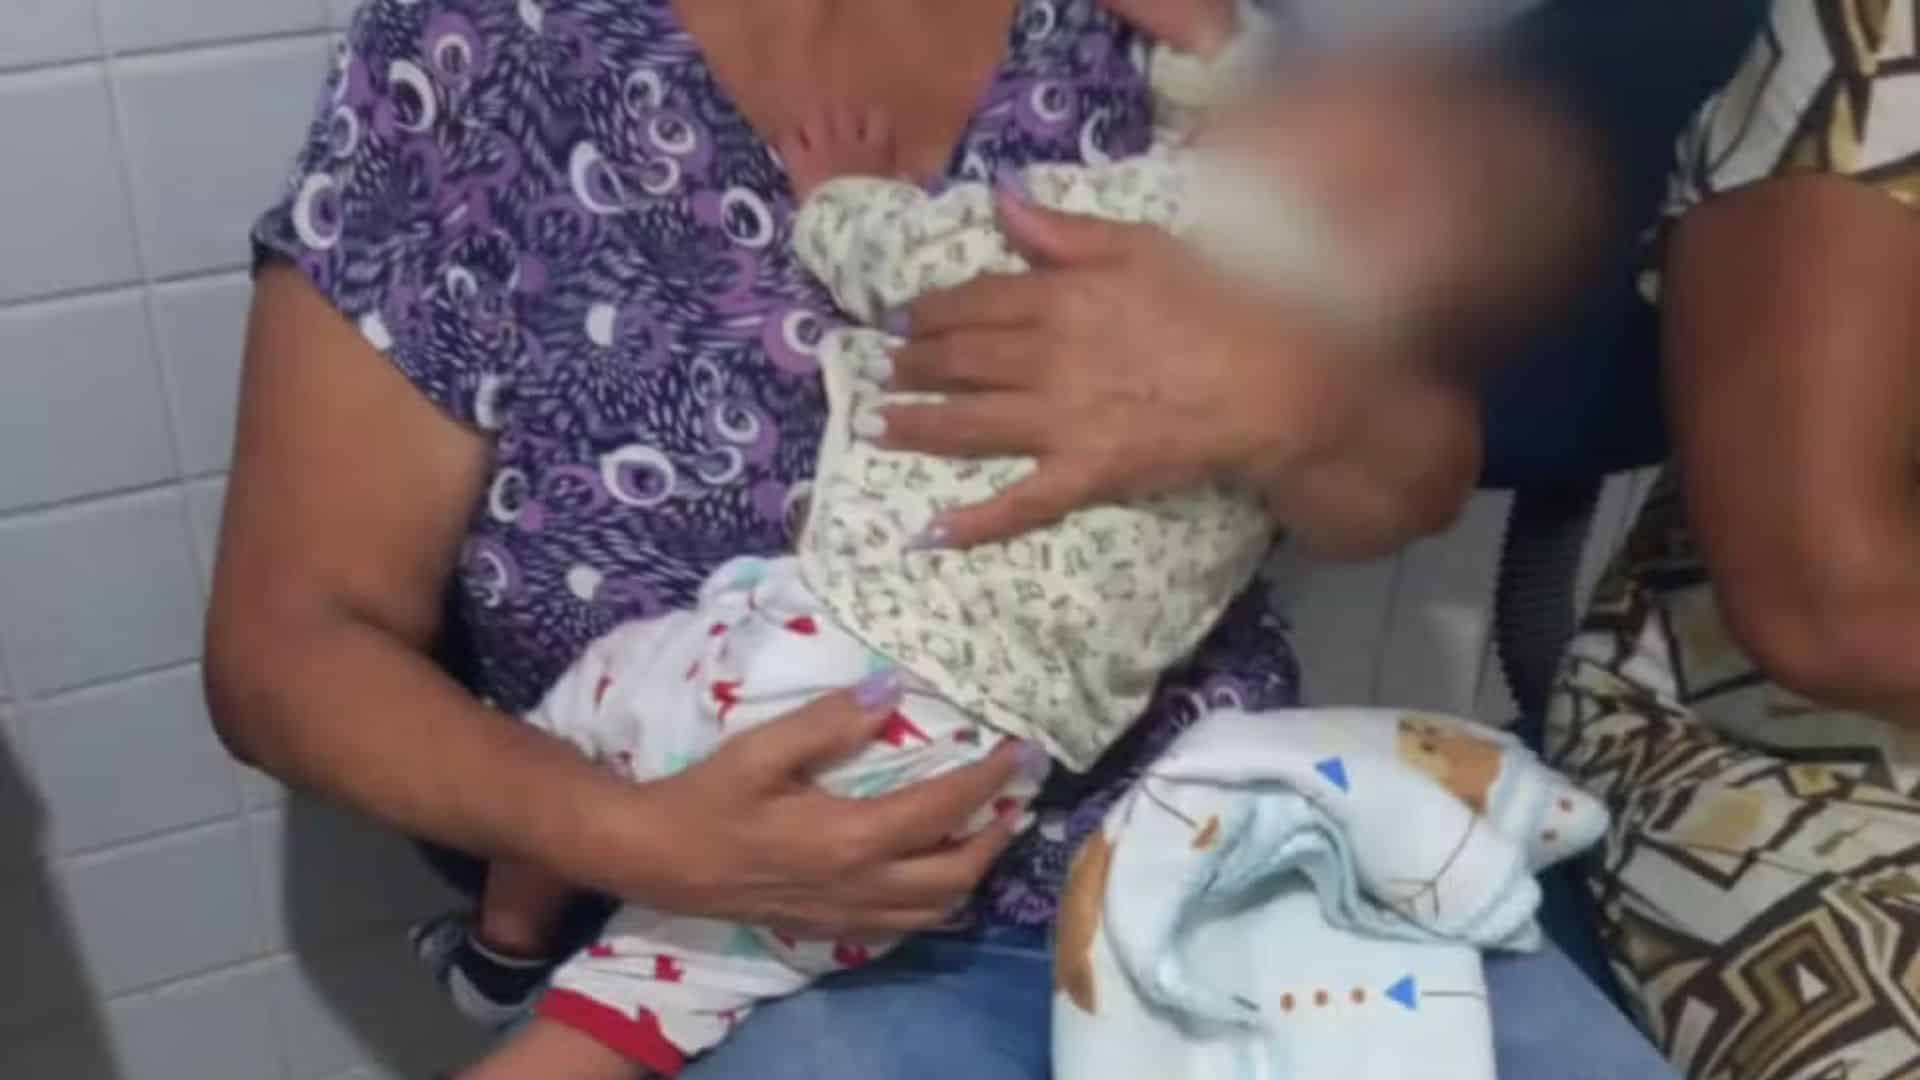 Bebê é abandonado com ferimentos e polícia prende mãe e amiga dela em flagrante